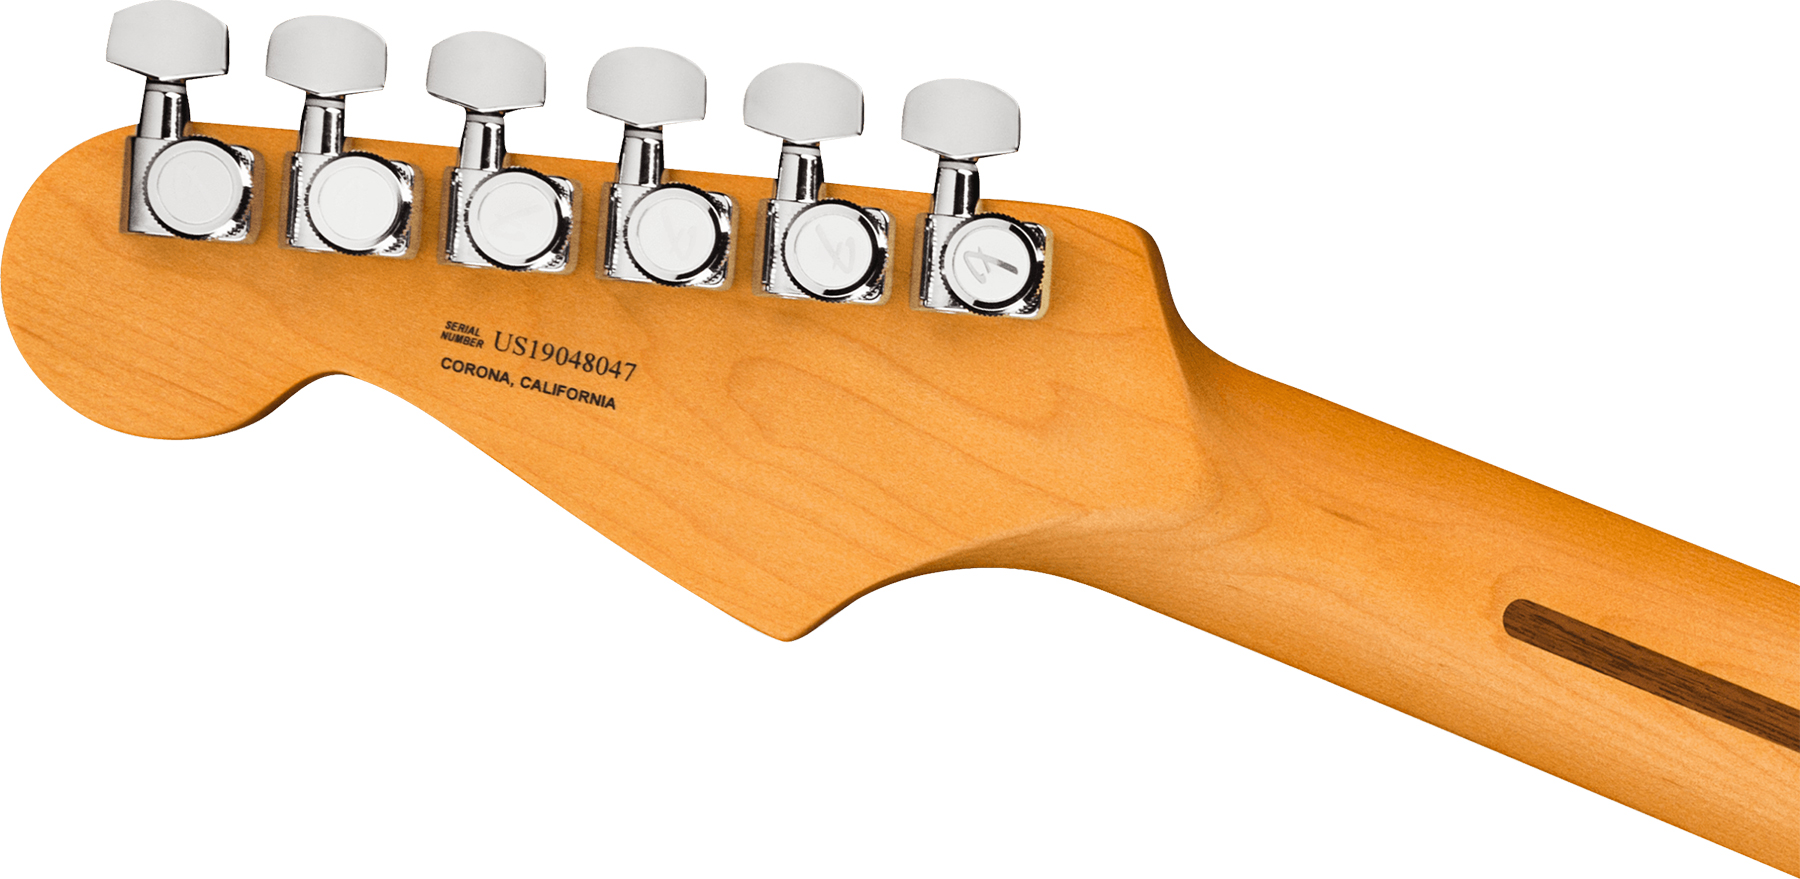 Fender Strat American Ultra 2019 Usa Rw - Ultraburst - Guitarra eléctrica con forma de str. - Variation 3